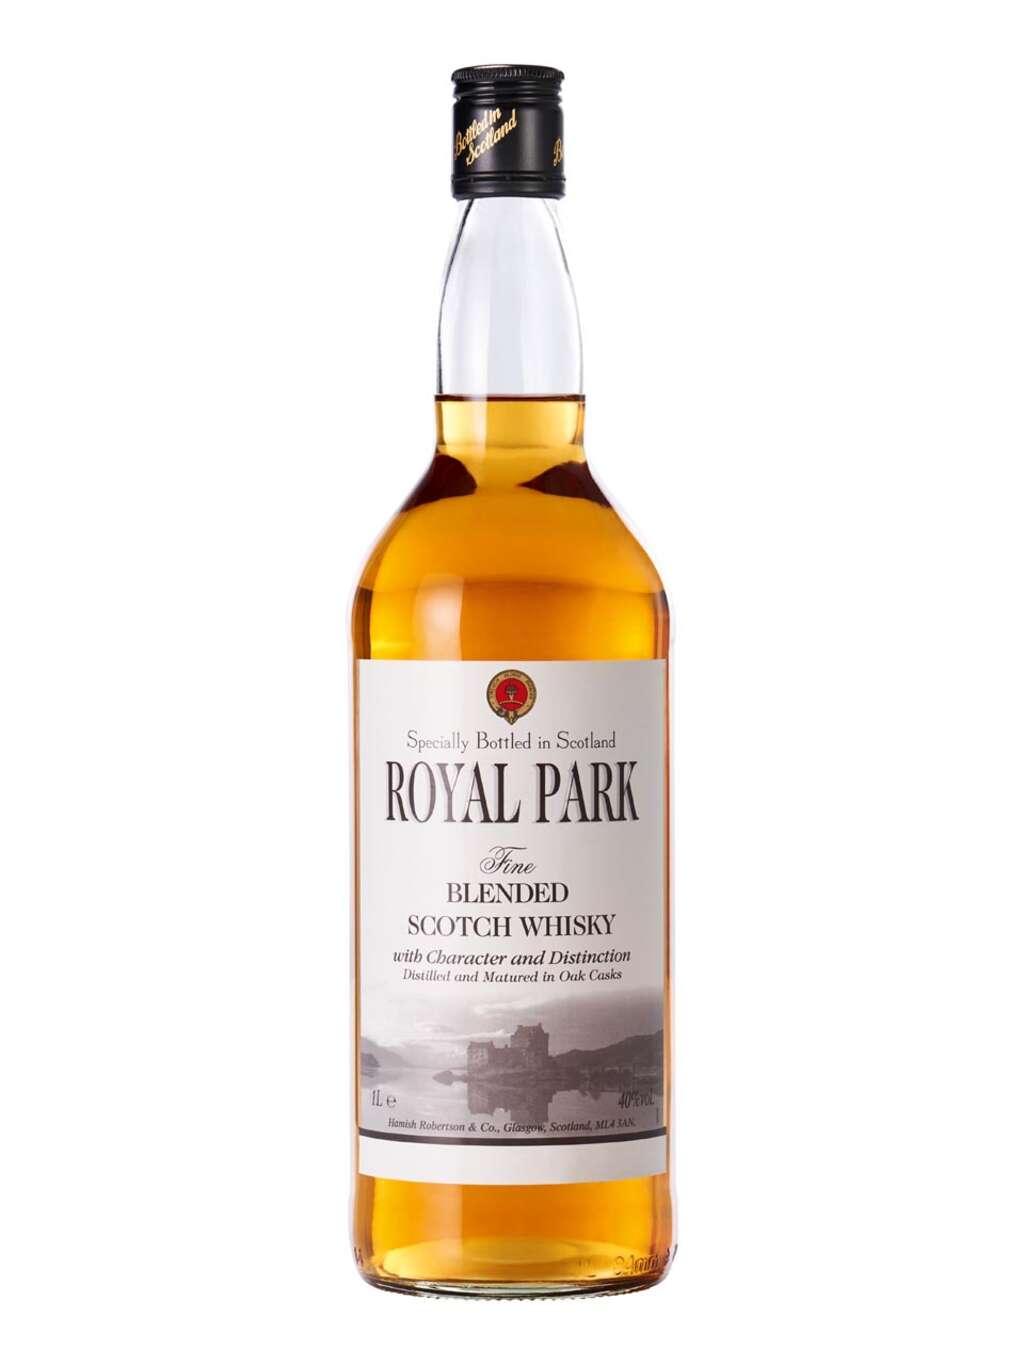 Royal Park Blended Scotch Whisky